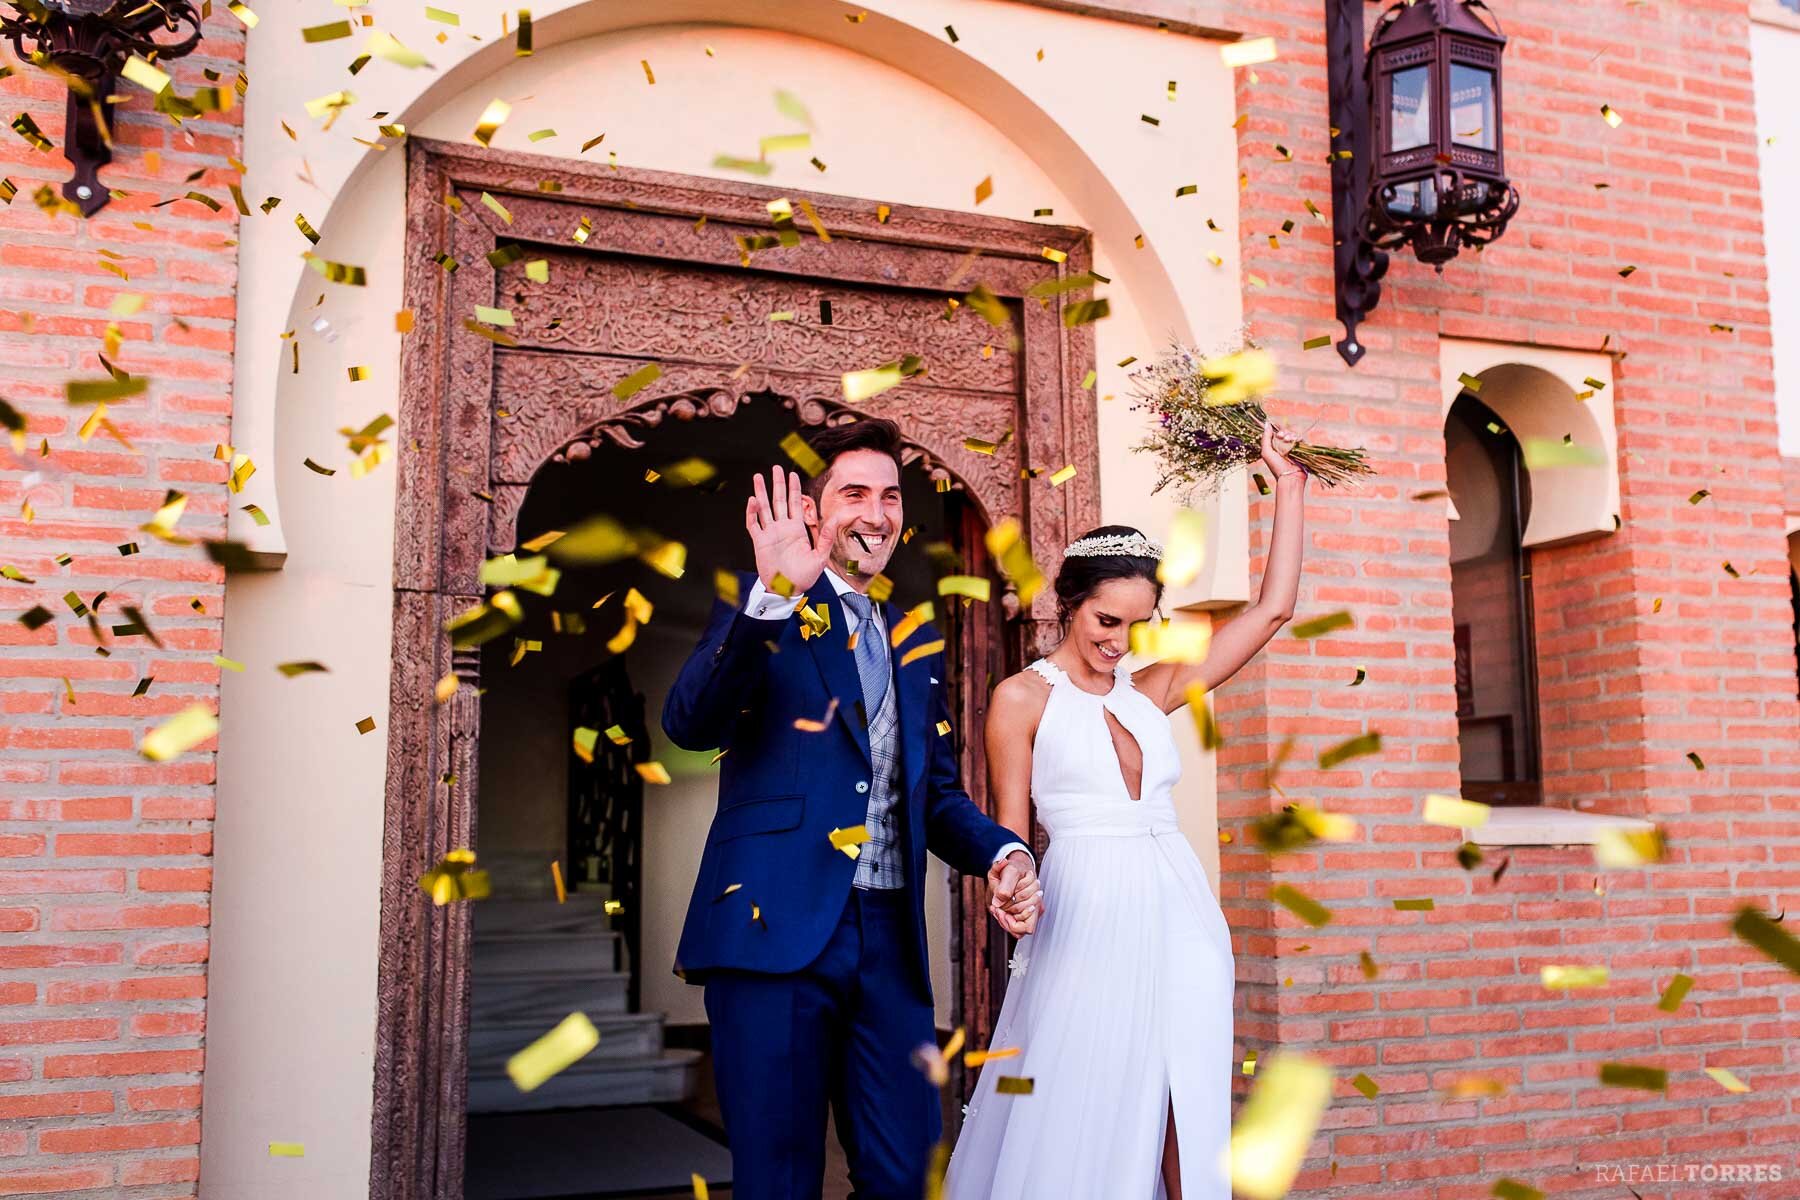 photo-principe-cortegana-rafael-torres-wedding-boda-fotografia-catering-campuzano-84.jpg